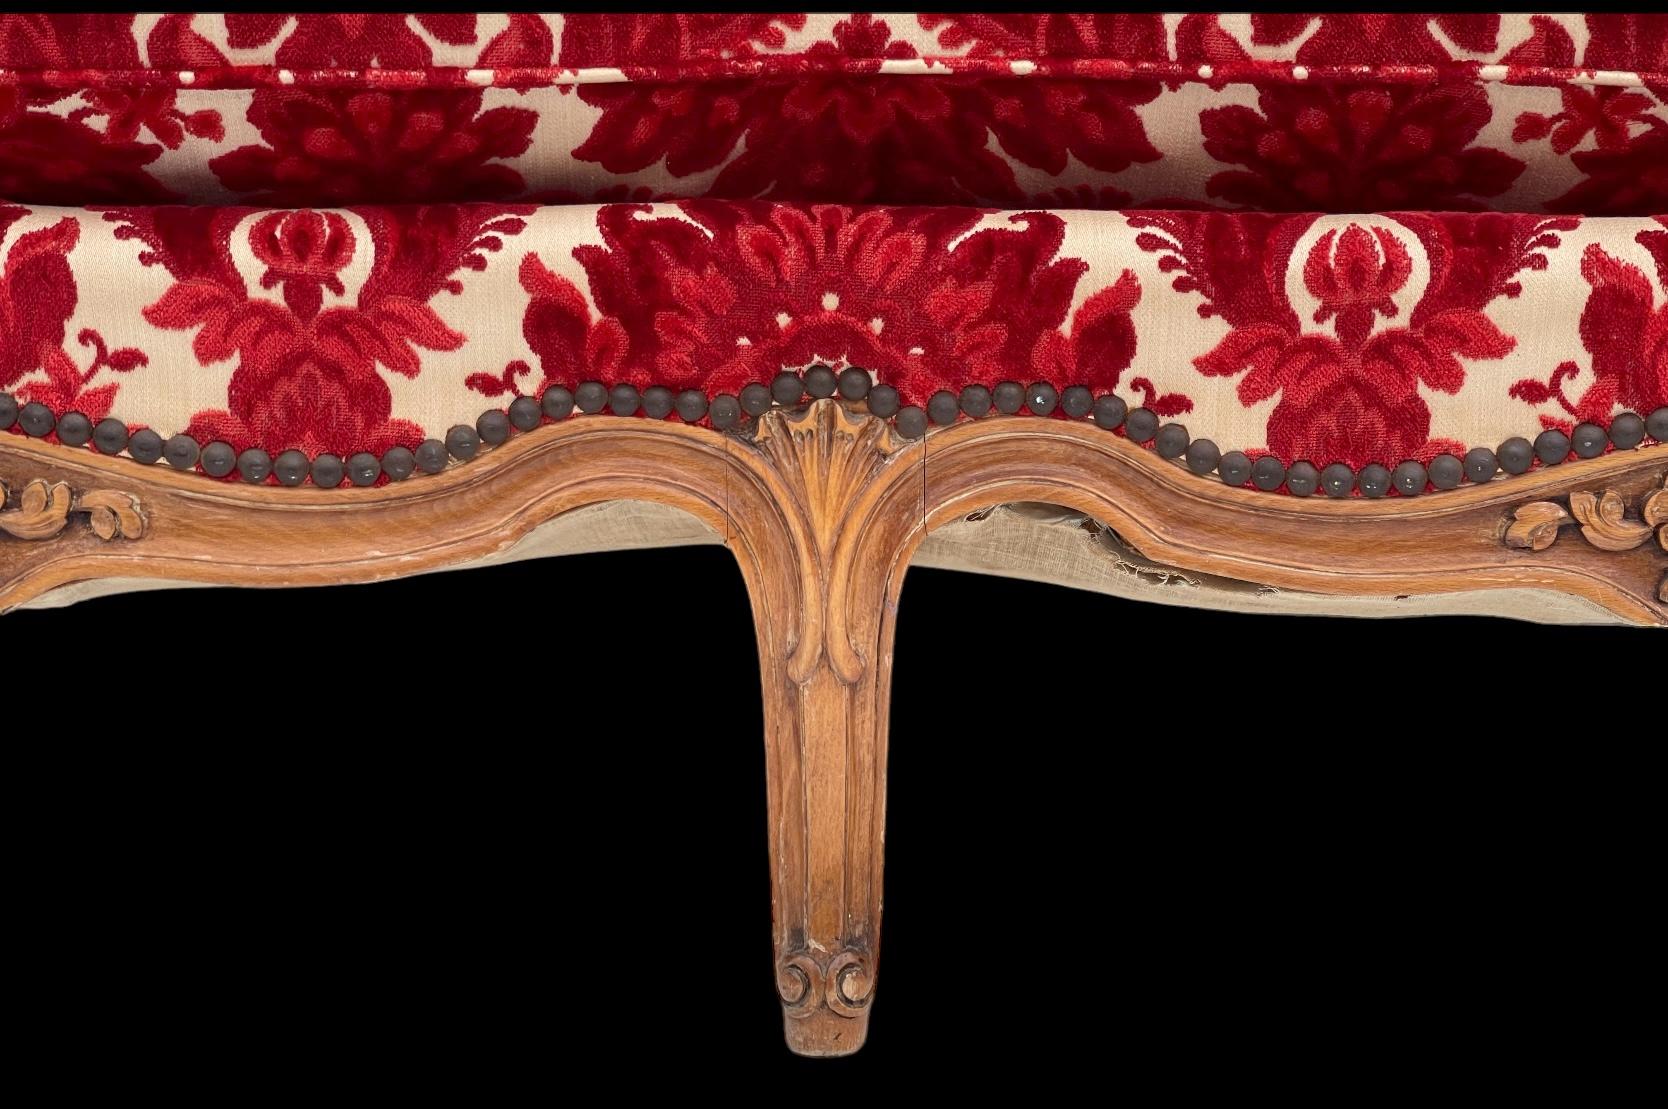 Dies ist eine wunderbare 1930er Jahre Französisch Louis XV-Stil Sofa in einem Vintage-rot geschnitten Samt mit einem plump genäht Kissen. Es ist unbeschriftet und in sehr gutem Zustand. 

Mein Versand ist nur für die kontinentalen USA und kann zwei